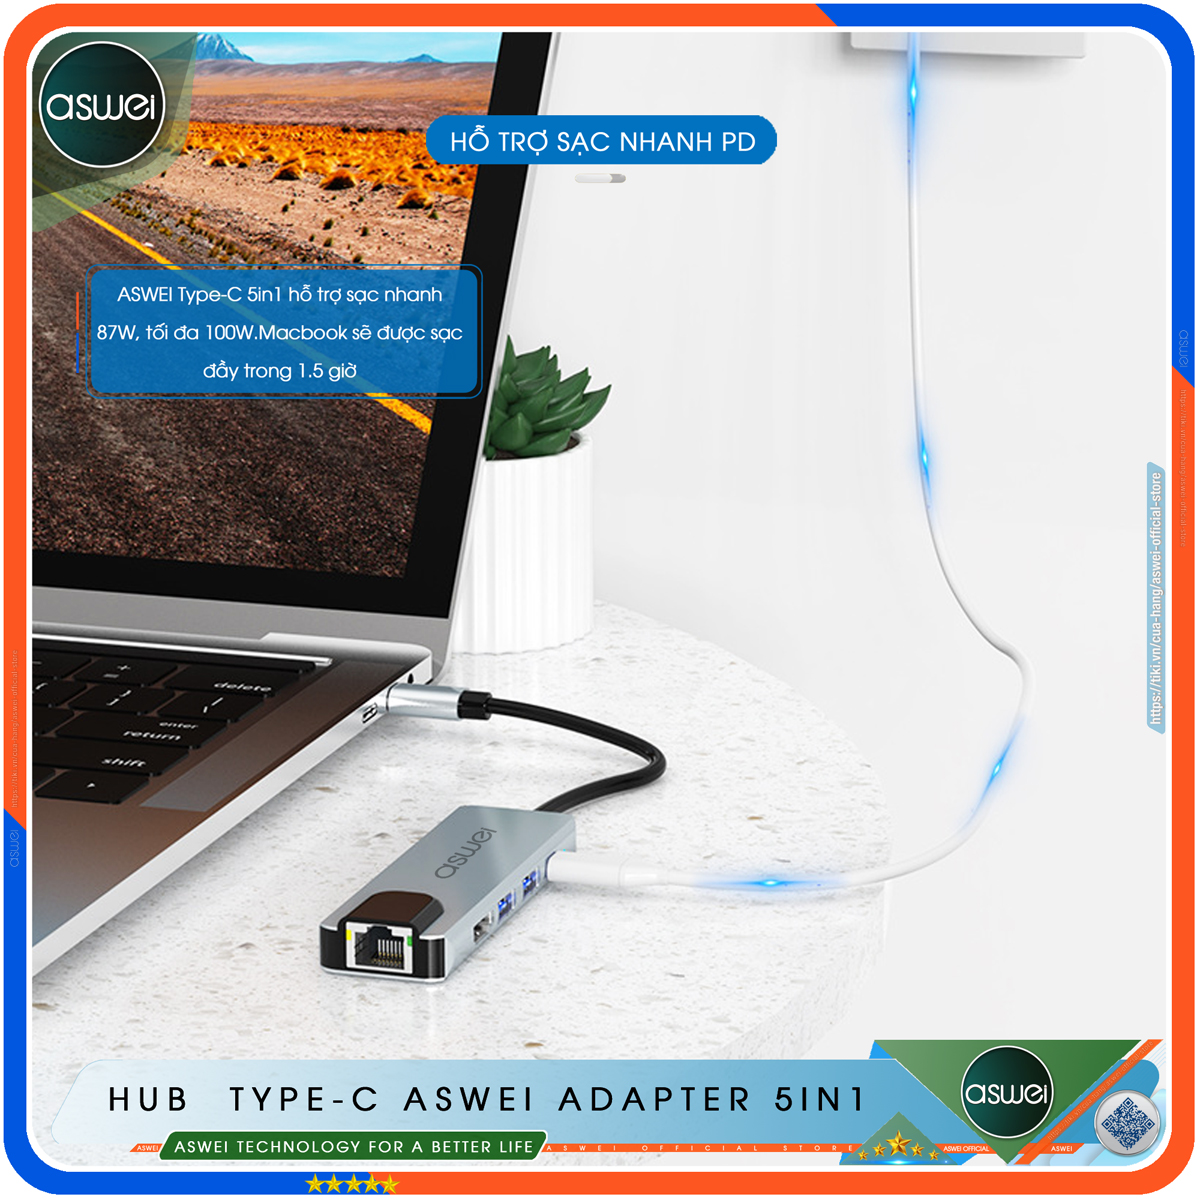 Hub Type C ASWEI 5in1 - Hub Chuyển Đổi USB Type-C To HDMI Chuẩn HDTV - Cổng Mạng Lan / HDMI 4K / USB 3.0 / Sạc Nhanh Type C PD - Kết Nối Nhiều Thiết Bị Với Tốc Độ Cao - Dành Cho MacBook / Tivi / Laptop / PC/ Máy Tính Bảng / Smartphone – Hàng Chính Hãng